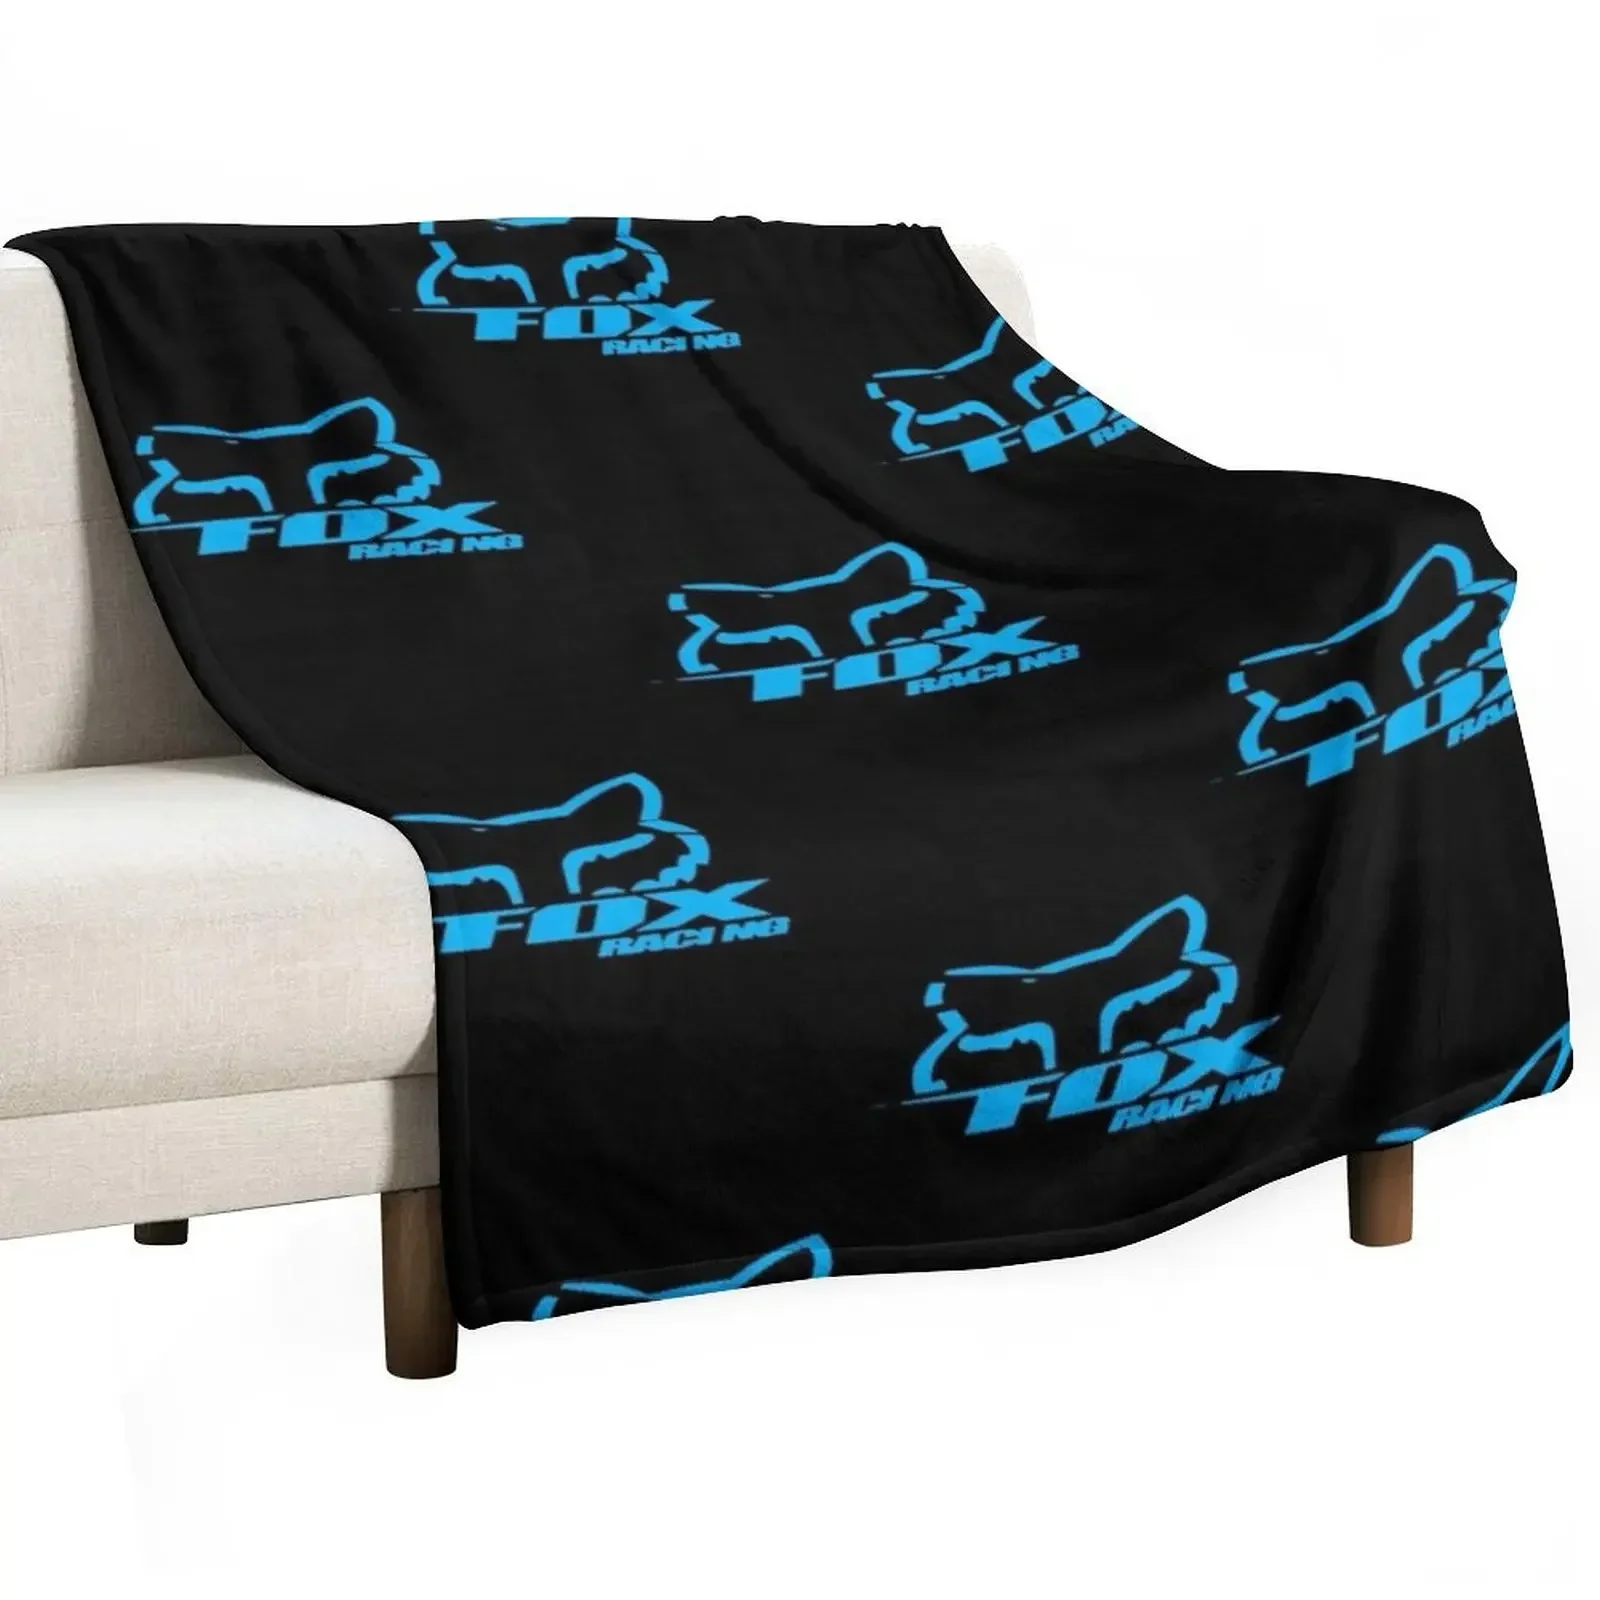 

Синее гоночное одеяло для лица, фланелевые пушистые одеяла для детей, подвижные одеяла